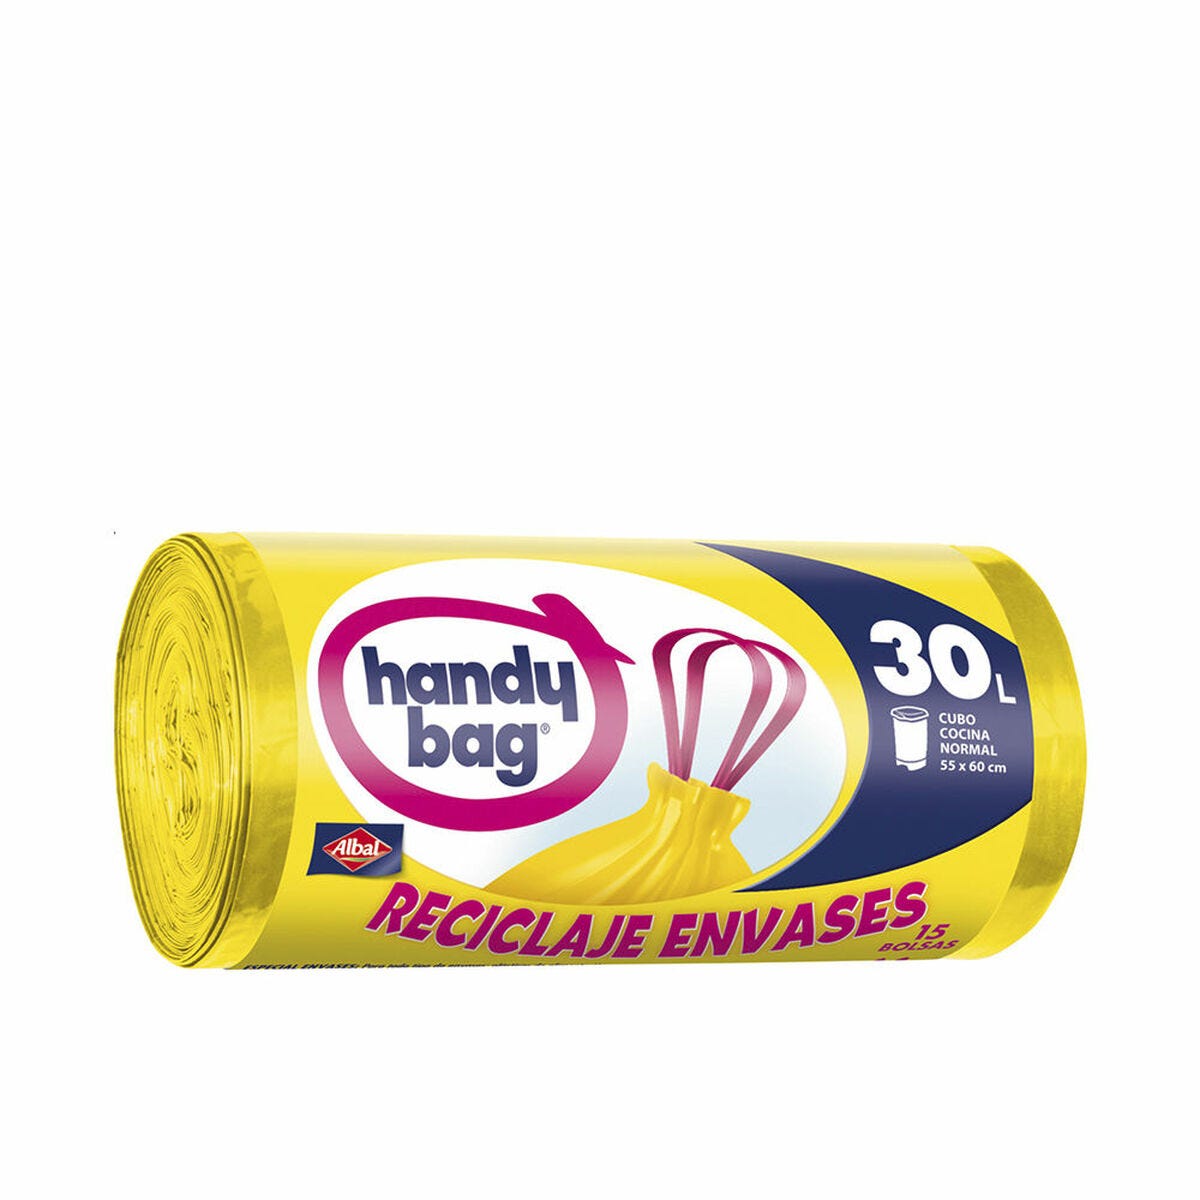 Promotion Handy Bag Sacs poubelle 30L - Protection active, Lot de